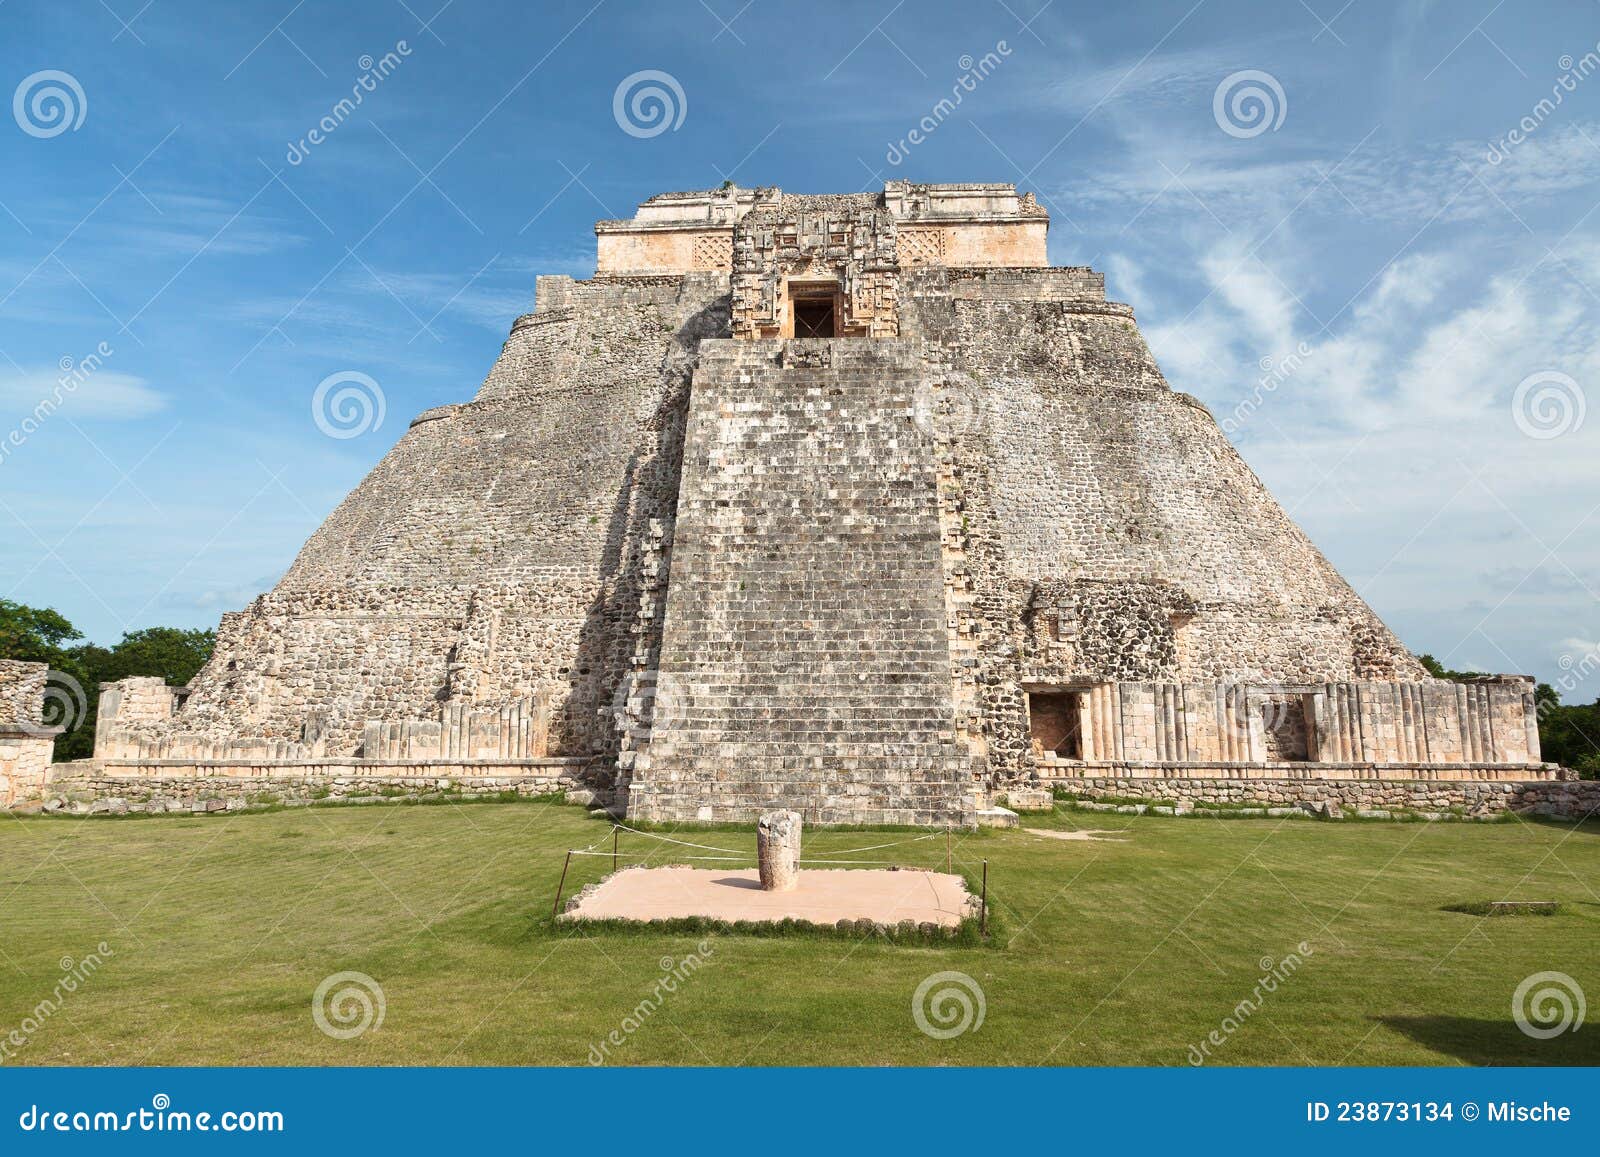 adivino pyramid in uxmal, mexico